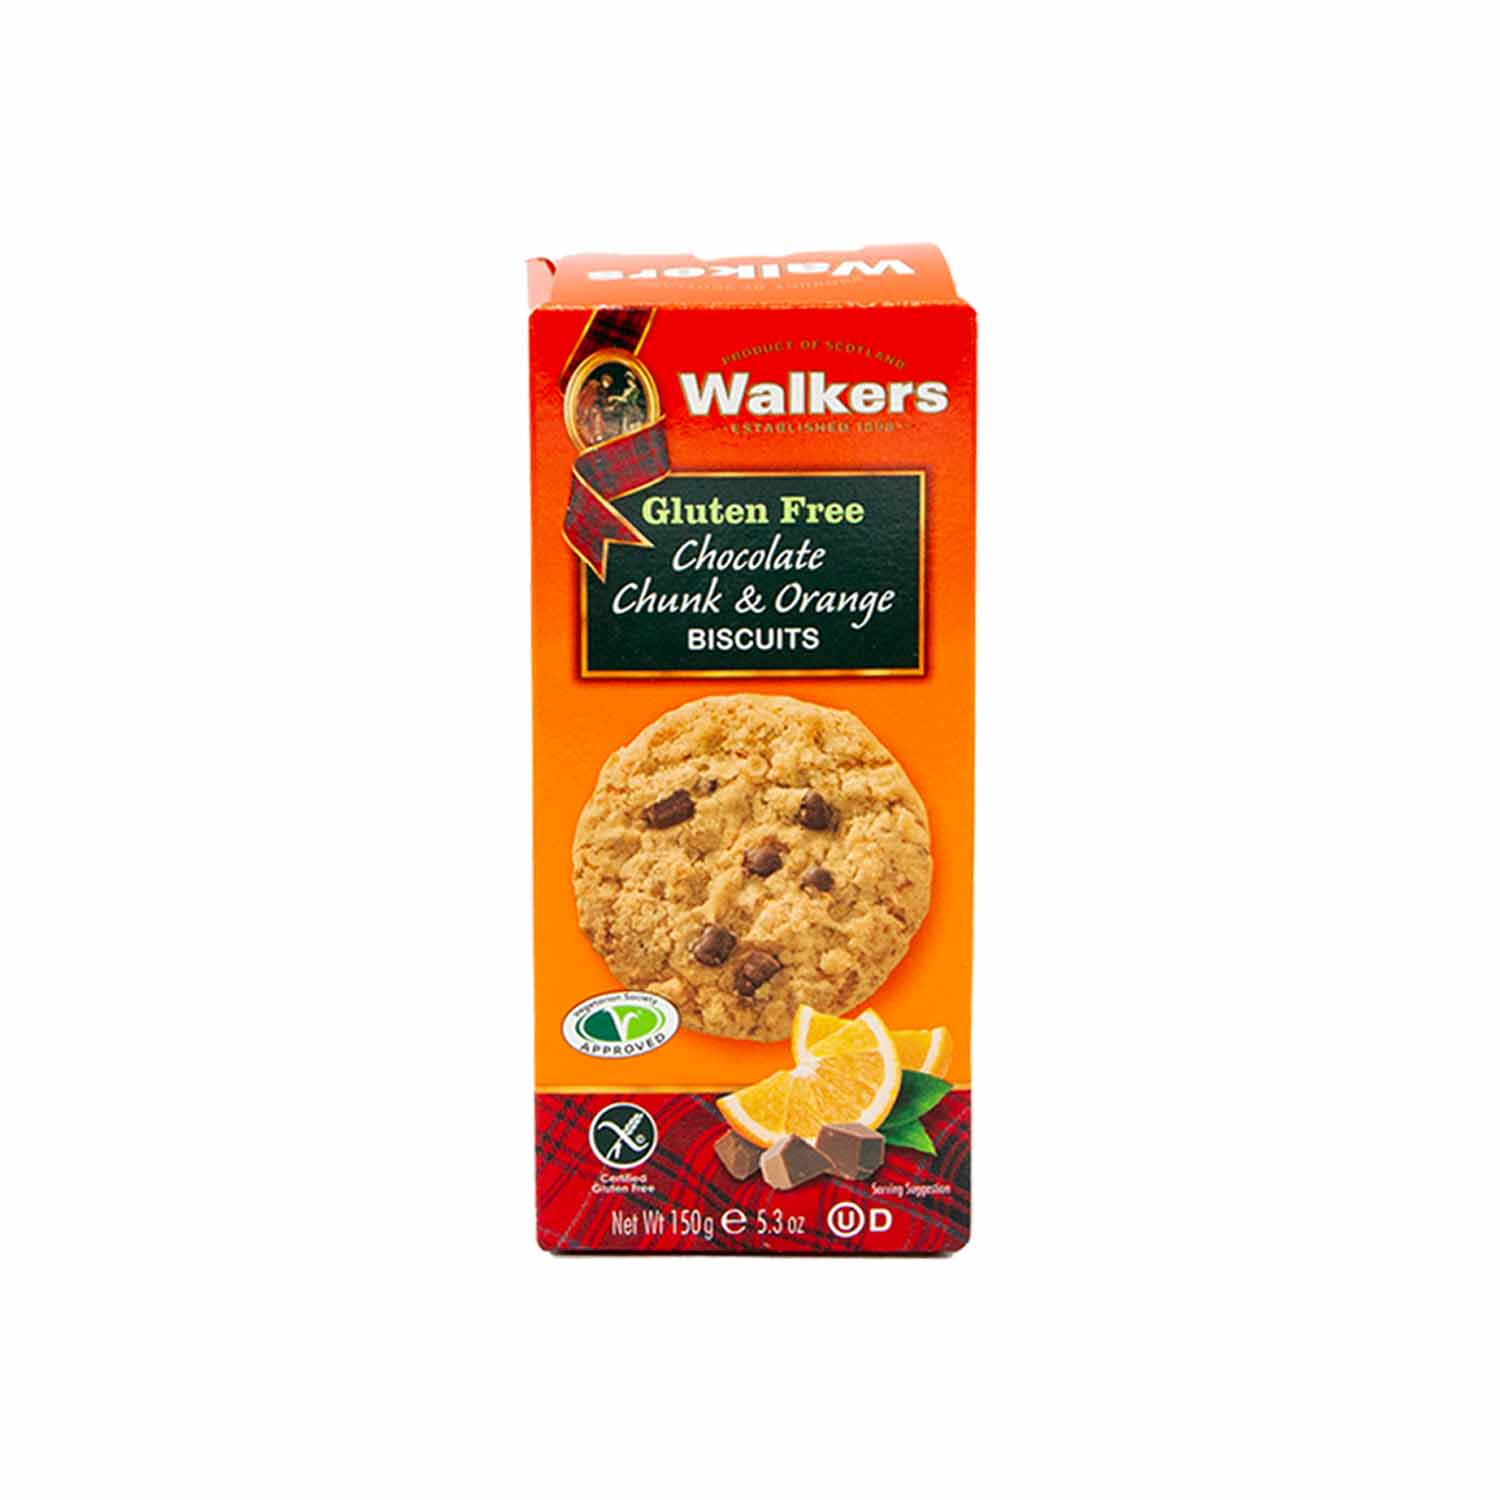 Walkers Chocolate Chunk & orange Biscuits – Glutenfrei, 150g